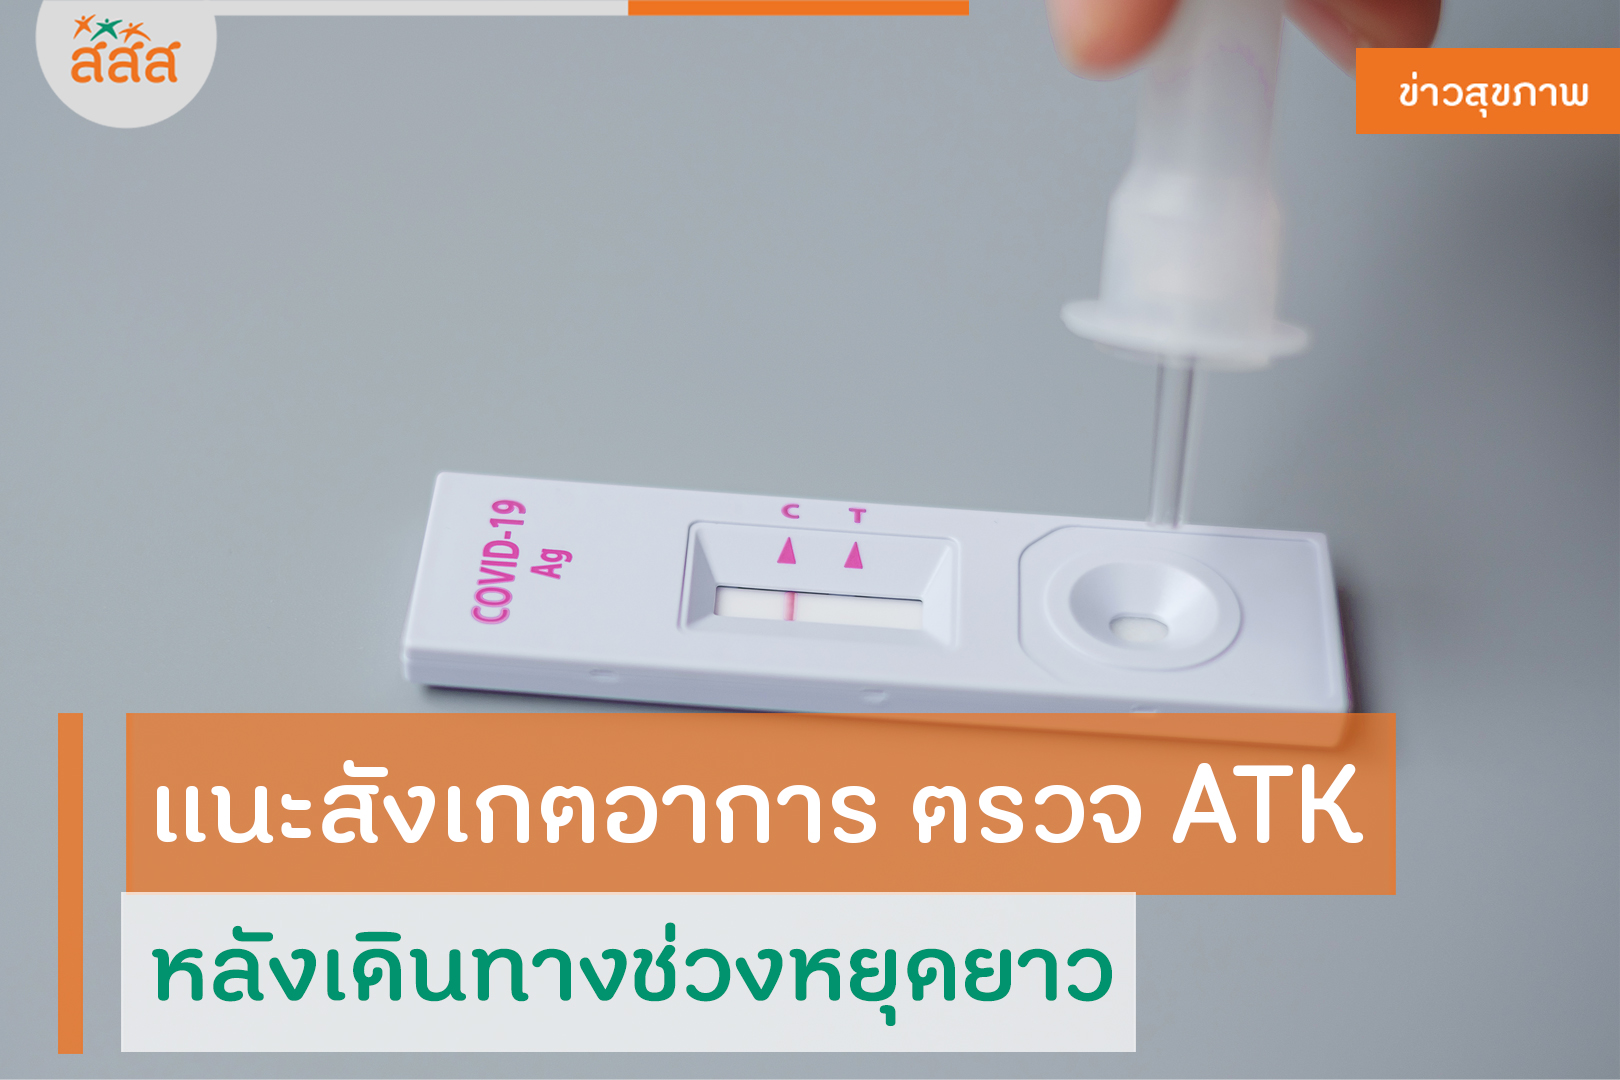 แนะสังเกตอาการ ตรวจ ATK หลังเดินทางช่วงหยุดยาว thaihealth